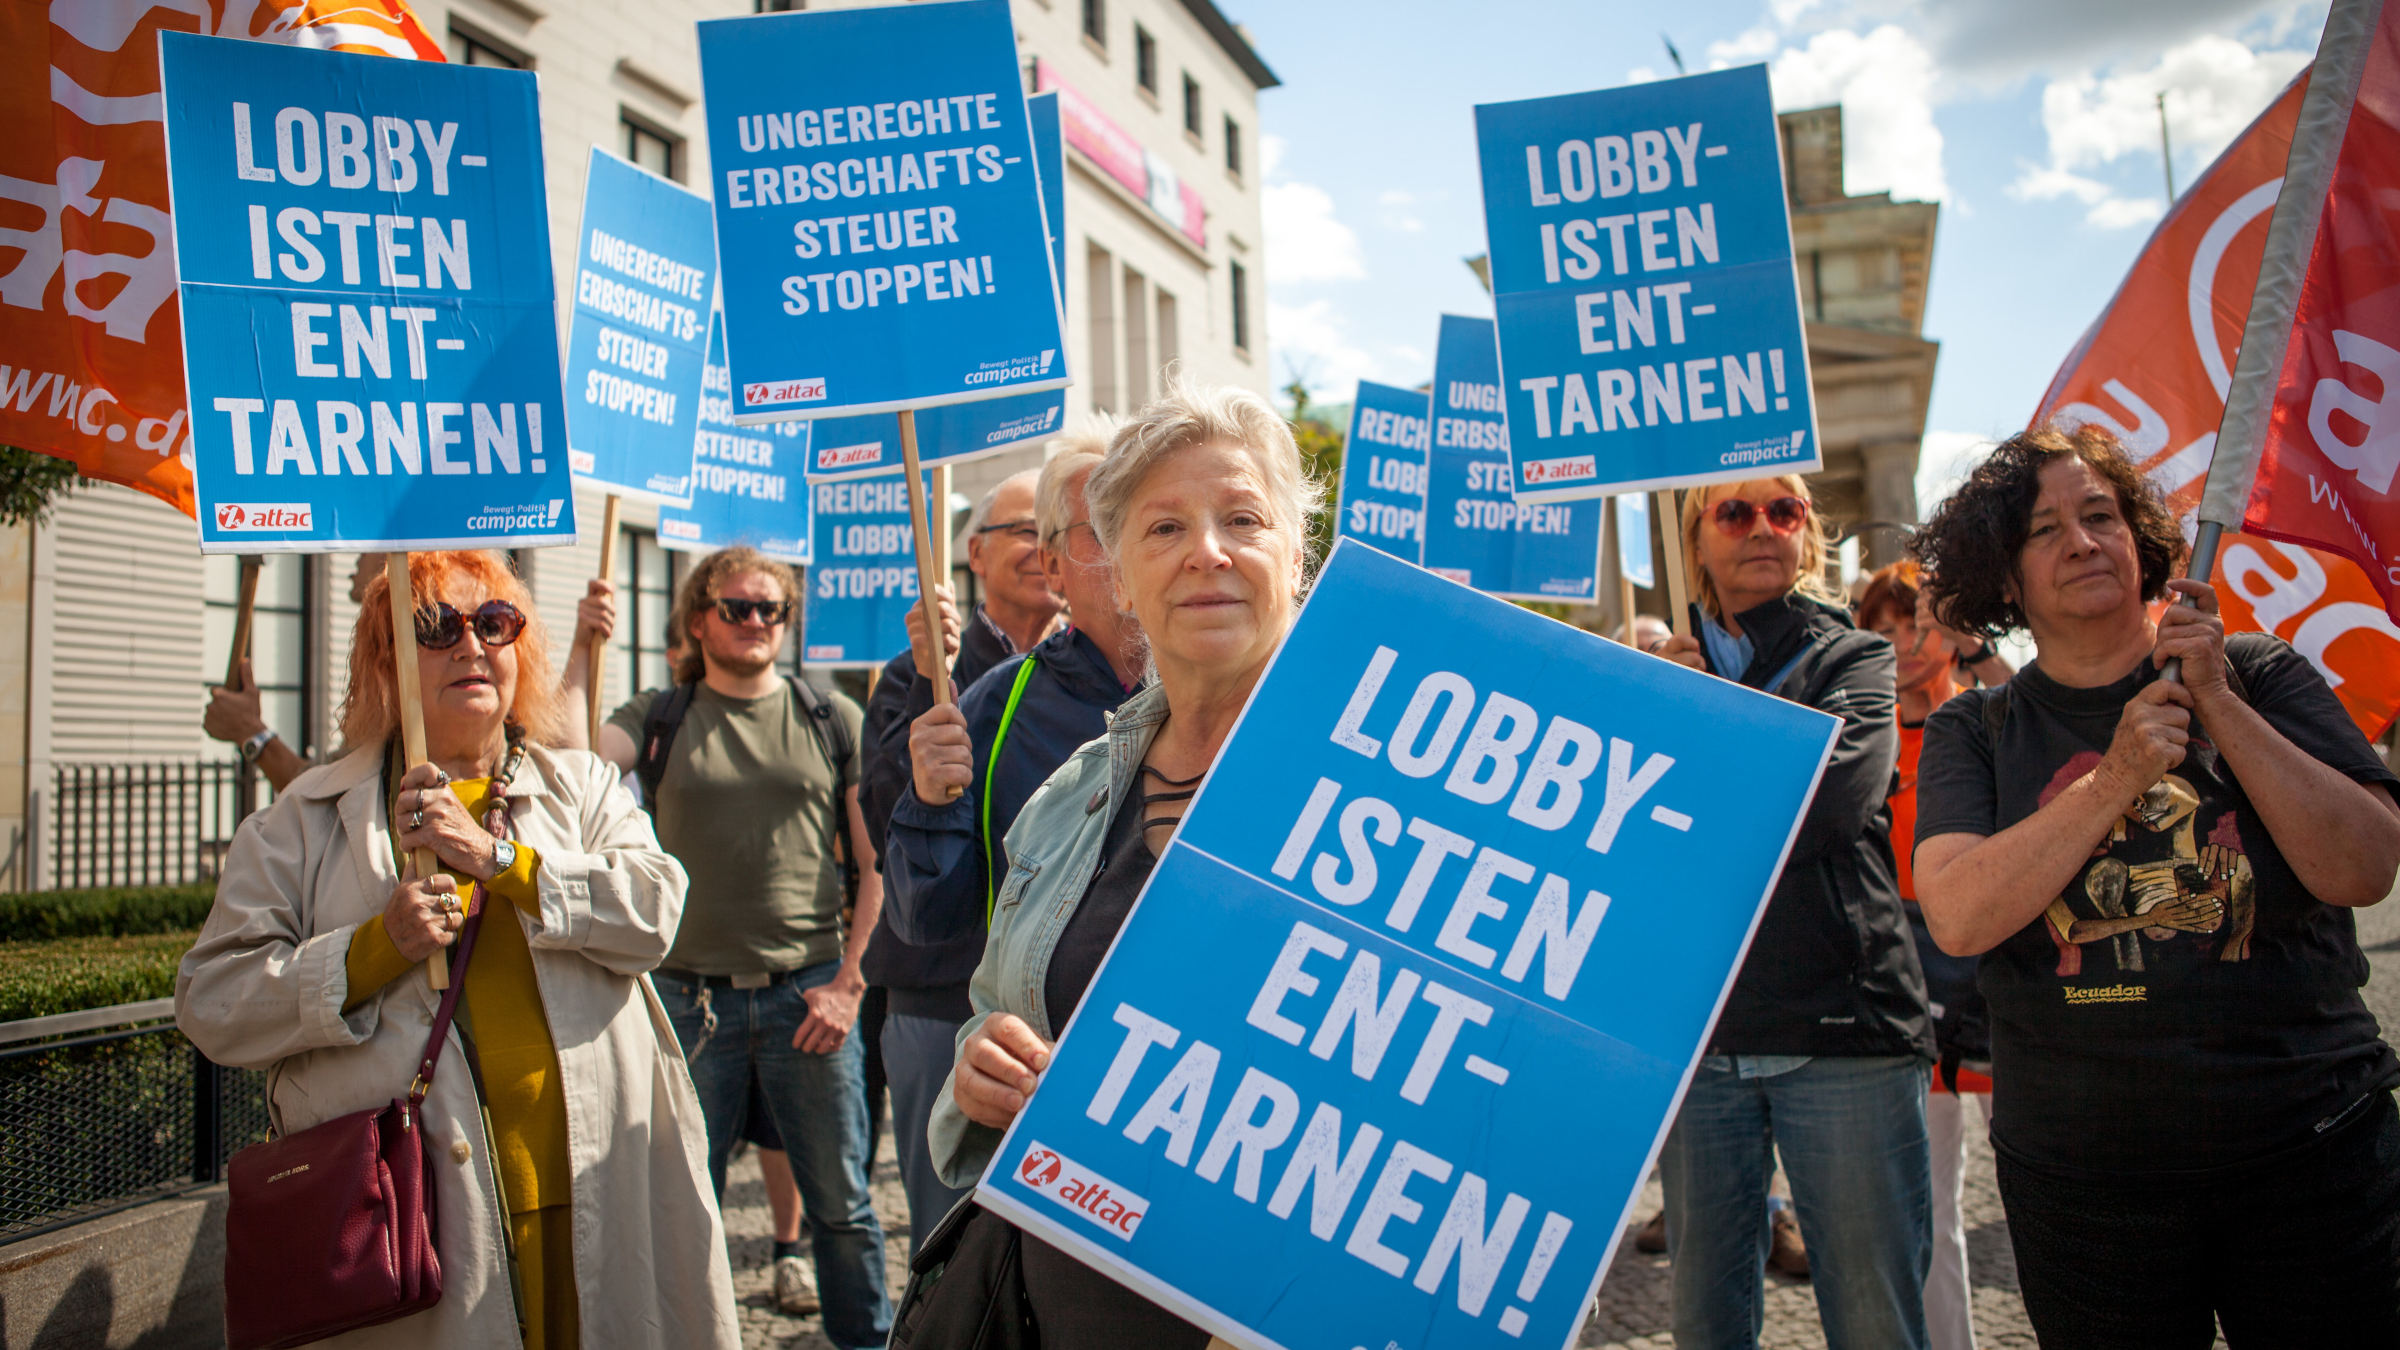 Lobbyisten enttarnen! Campact-Aktive protestieren bei einer Aktion im Jahr 2016.